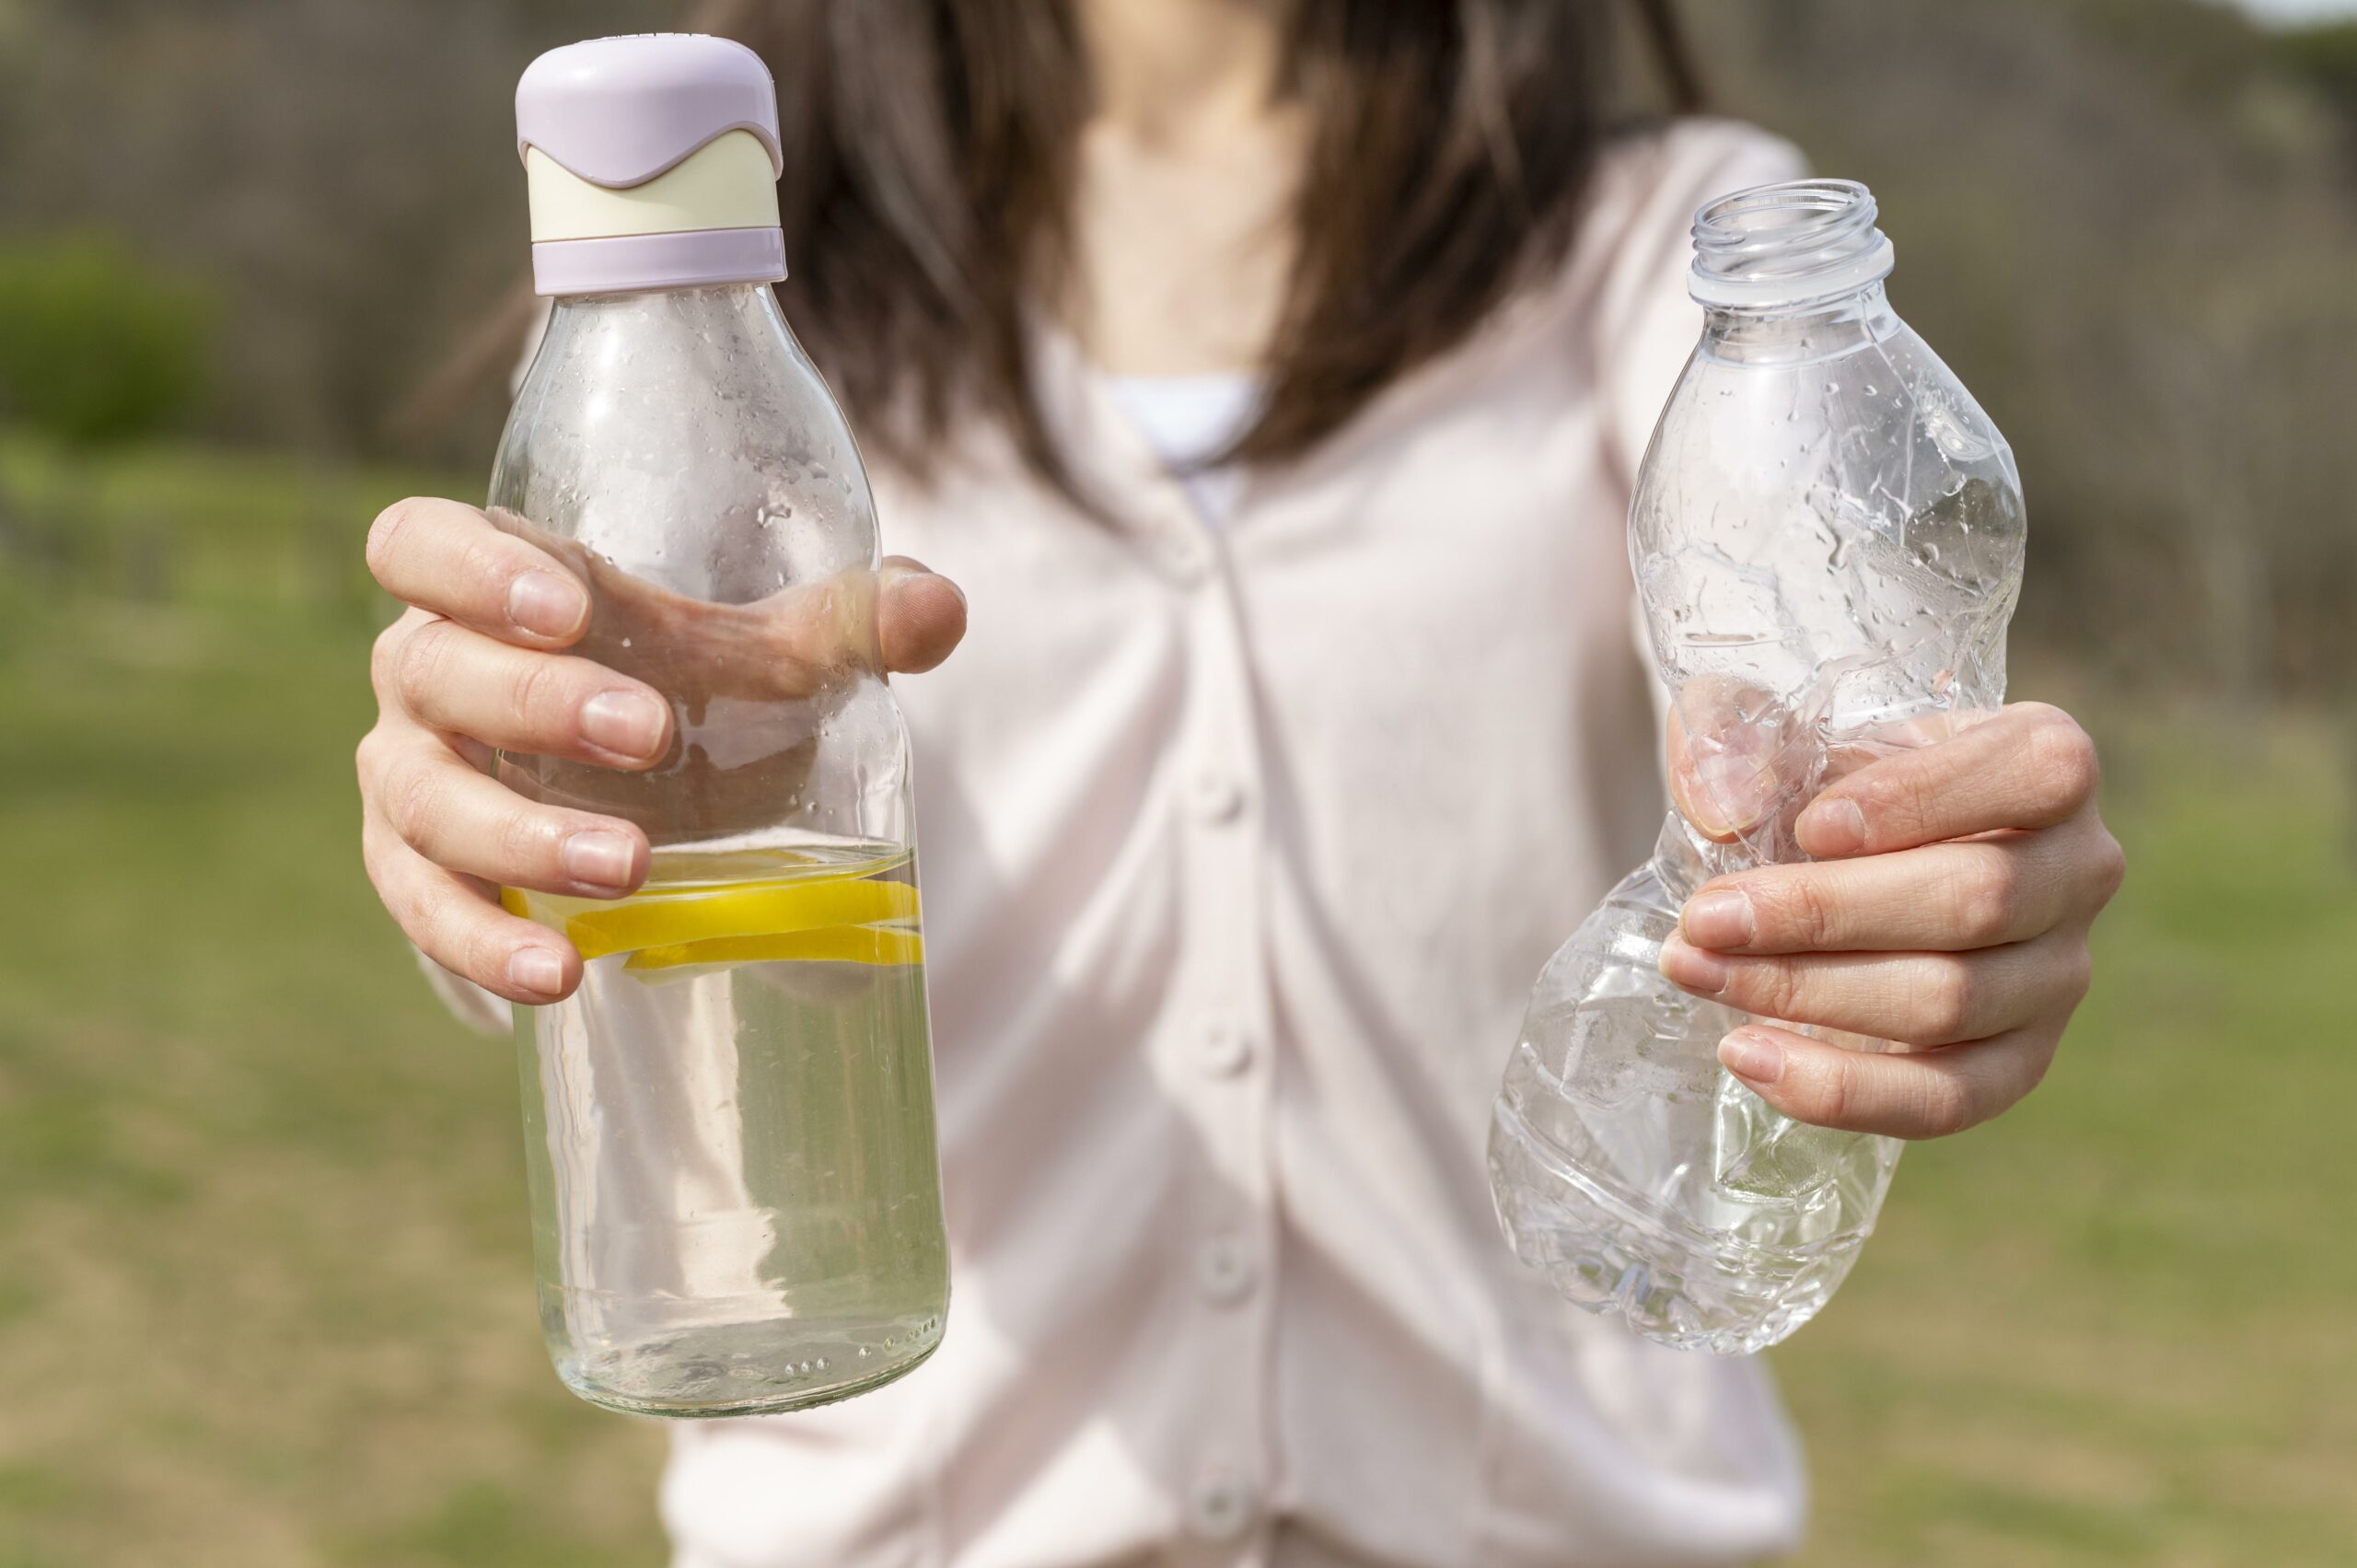 LCA analýza deklaruje PET lahev jako ekologicky šetrnější